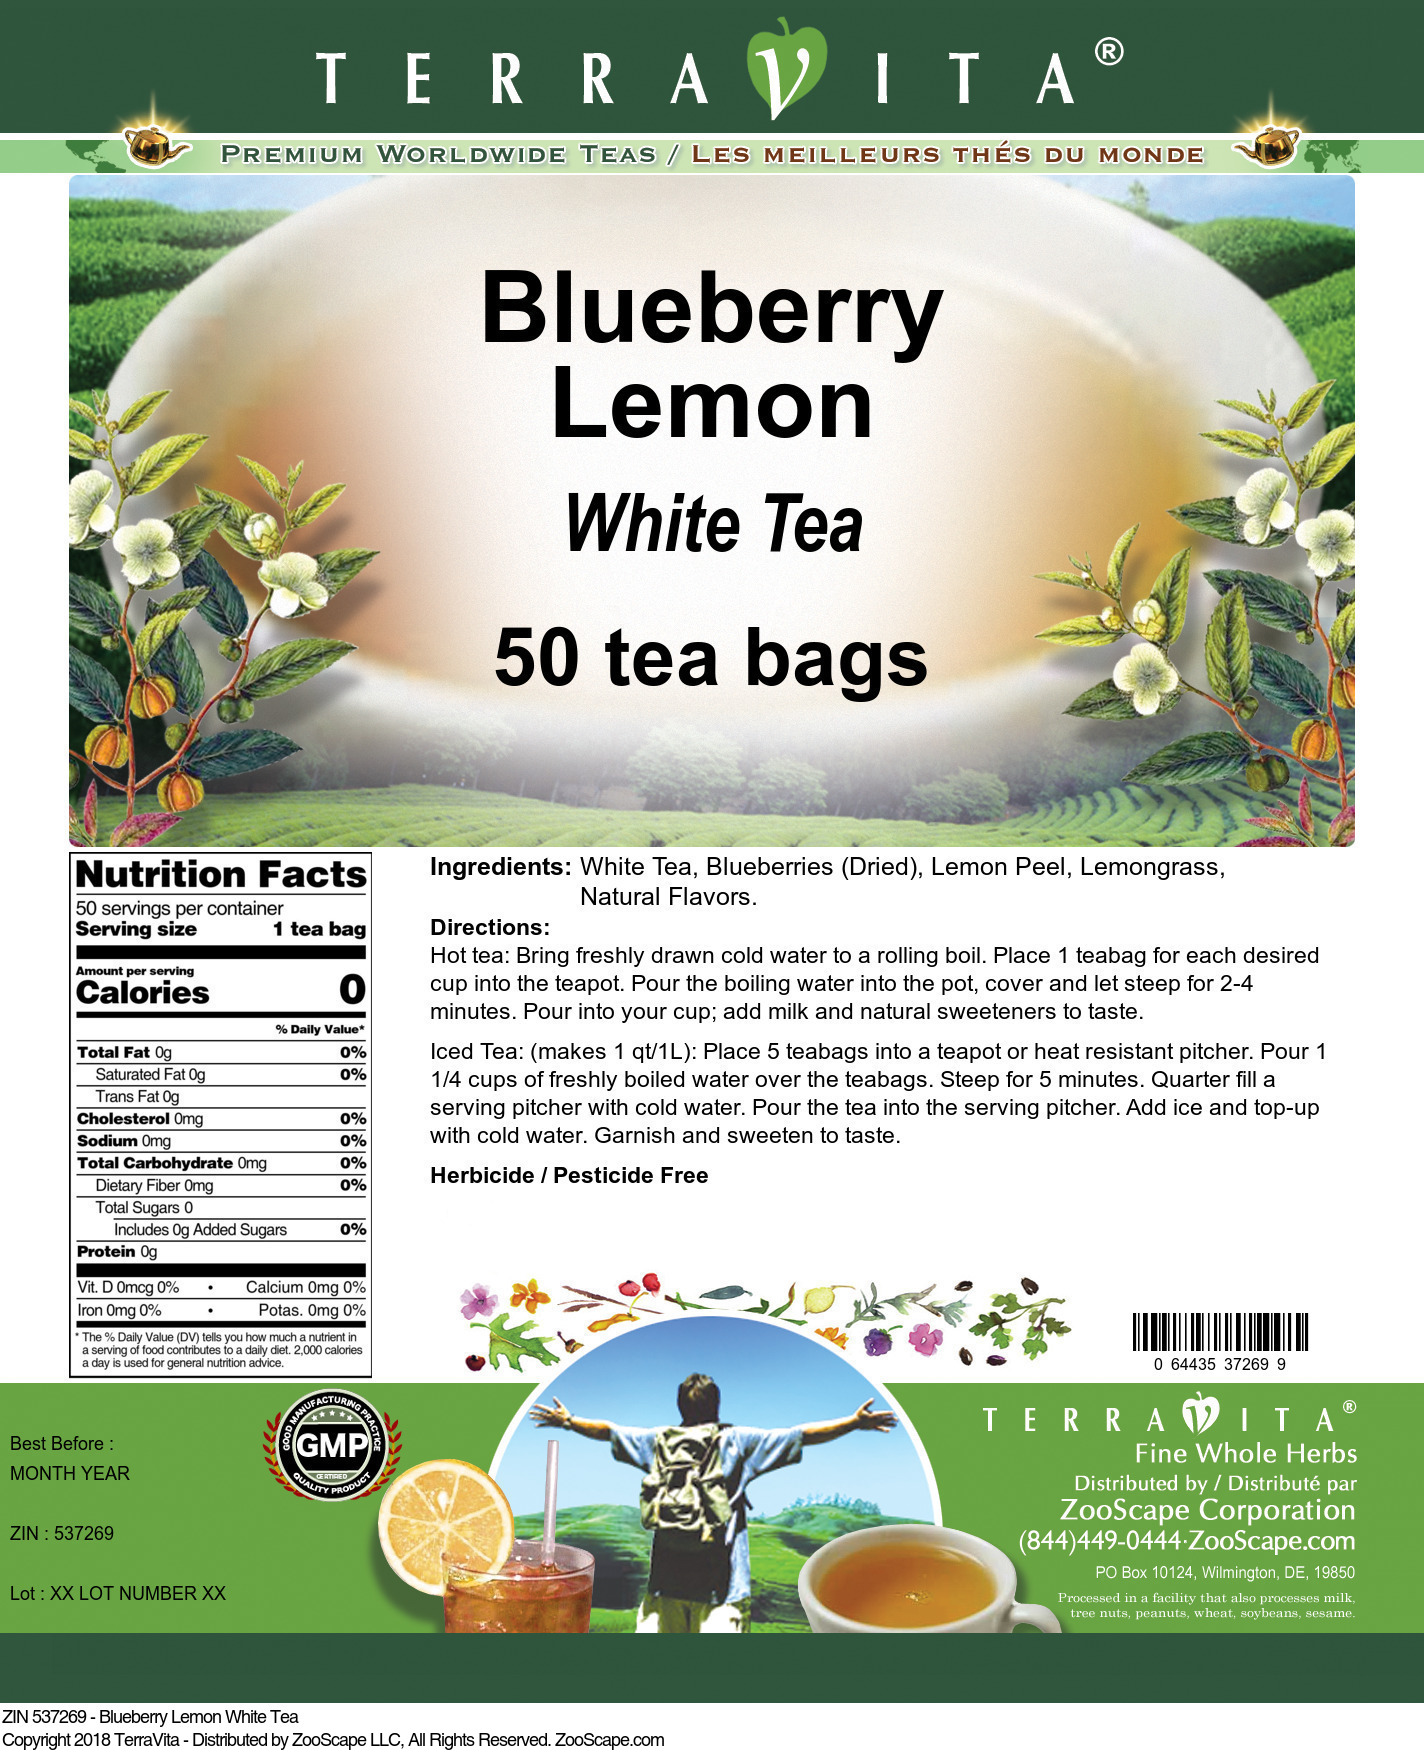 Blueberry Lemon White Tea - Label